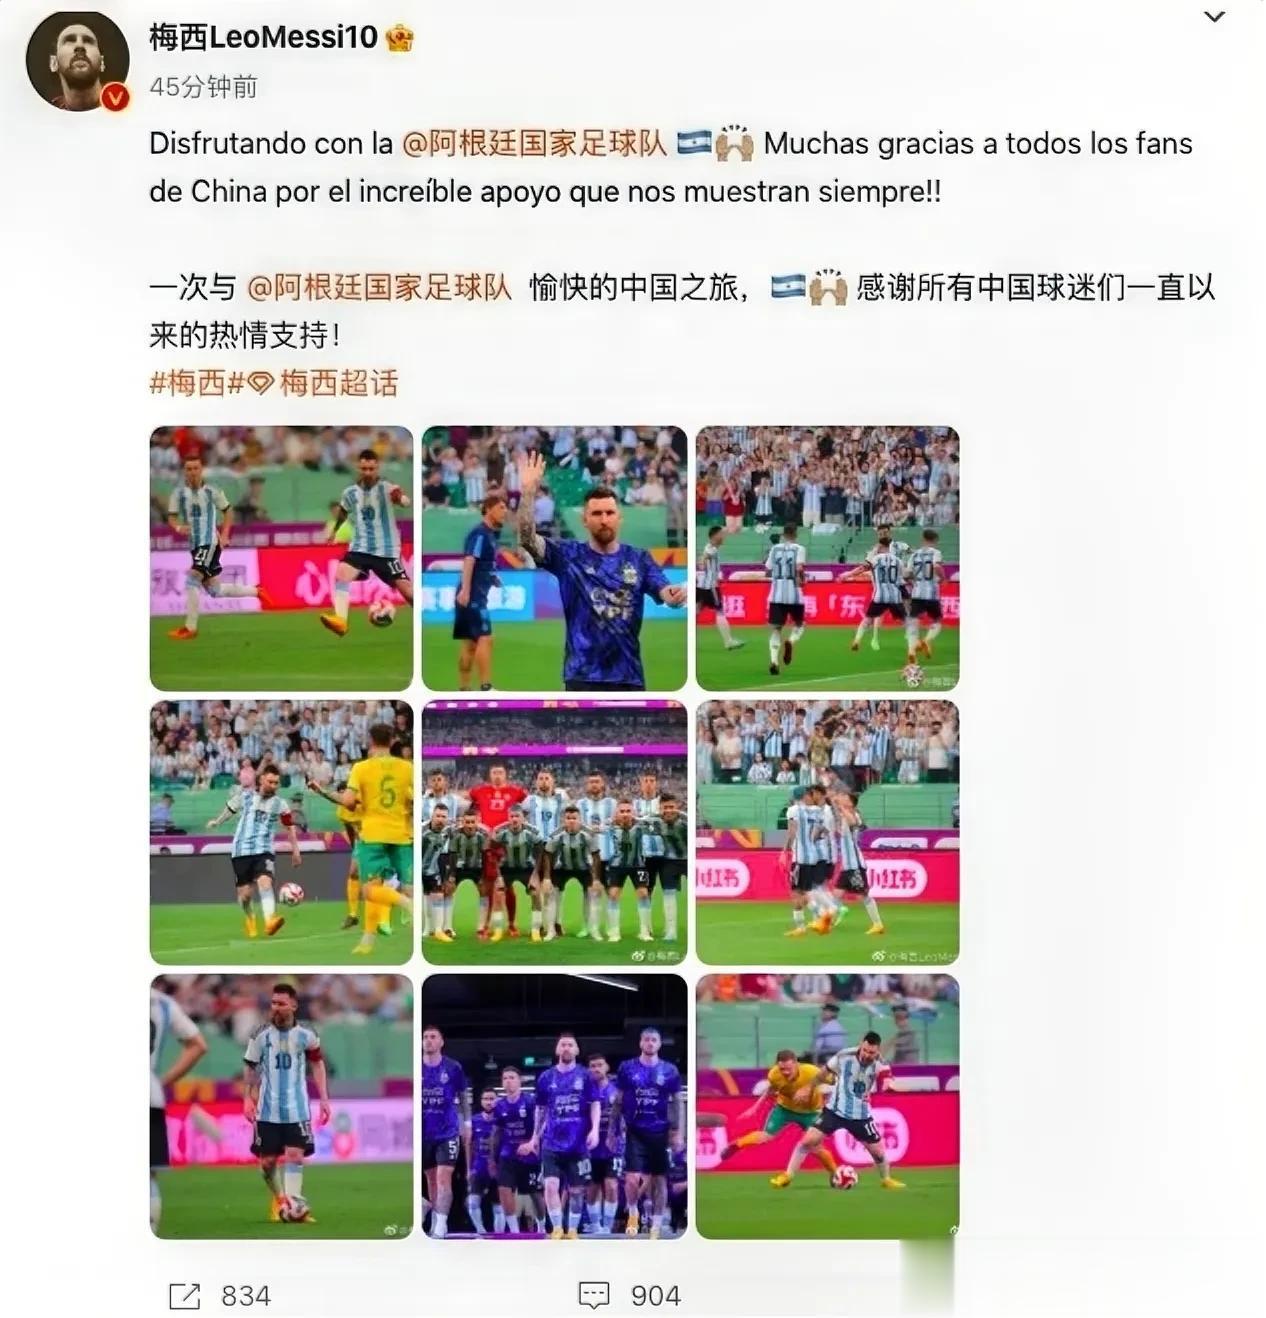 梅球王不要惊讶，这只是一场友谊赛，如果是世界杯正赛，中国球迷会更热情、更狂热。
